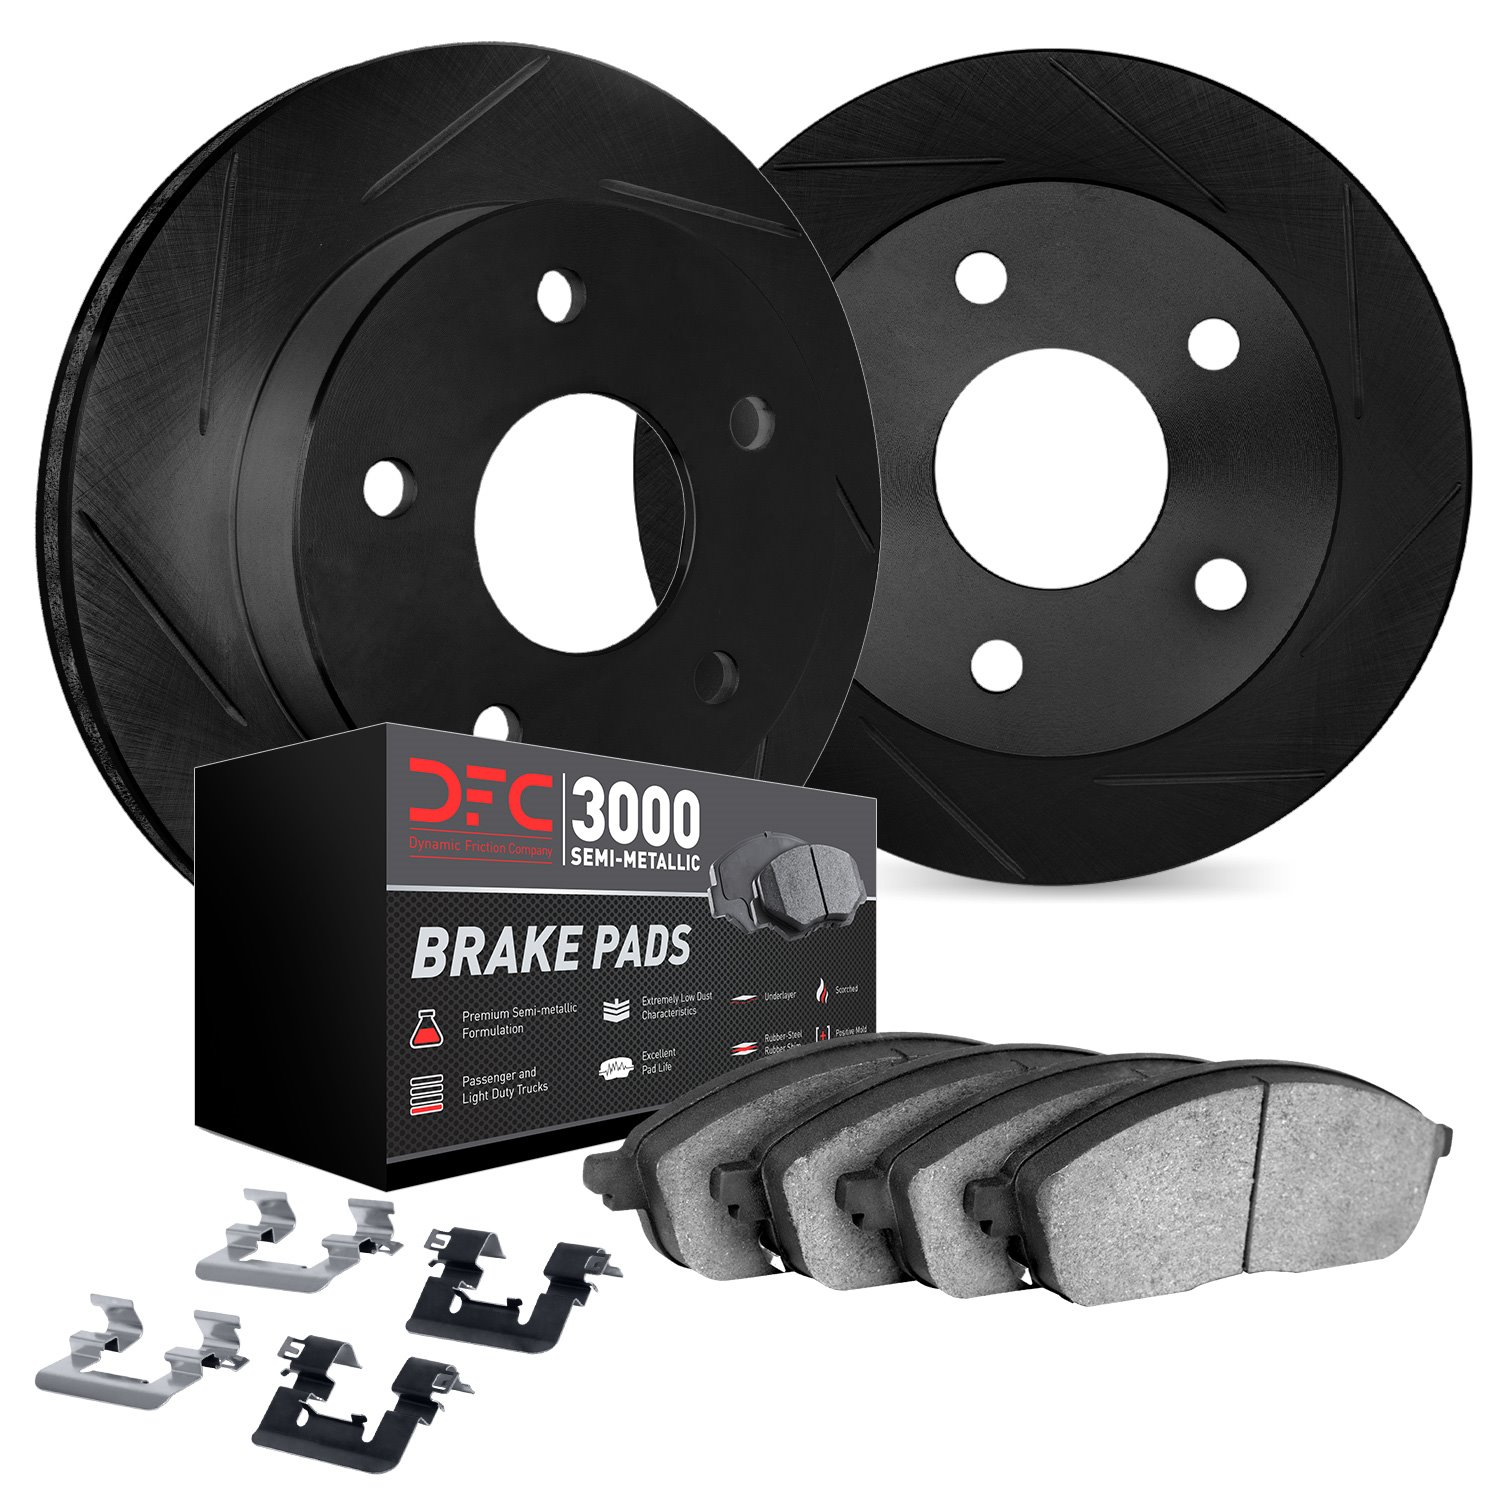 3112-67099 Slotted Brake Rotors with 3000-Series Semi-Metallic Brake Pads Kit & Hardware [Black], 2008-2013 Infiniti/Nissan, Pos